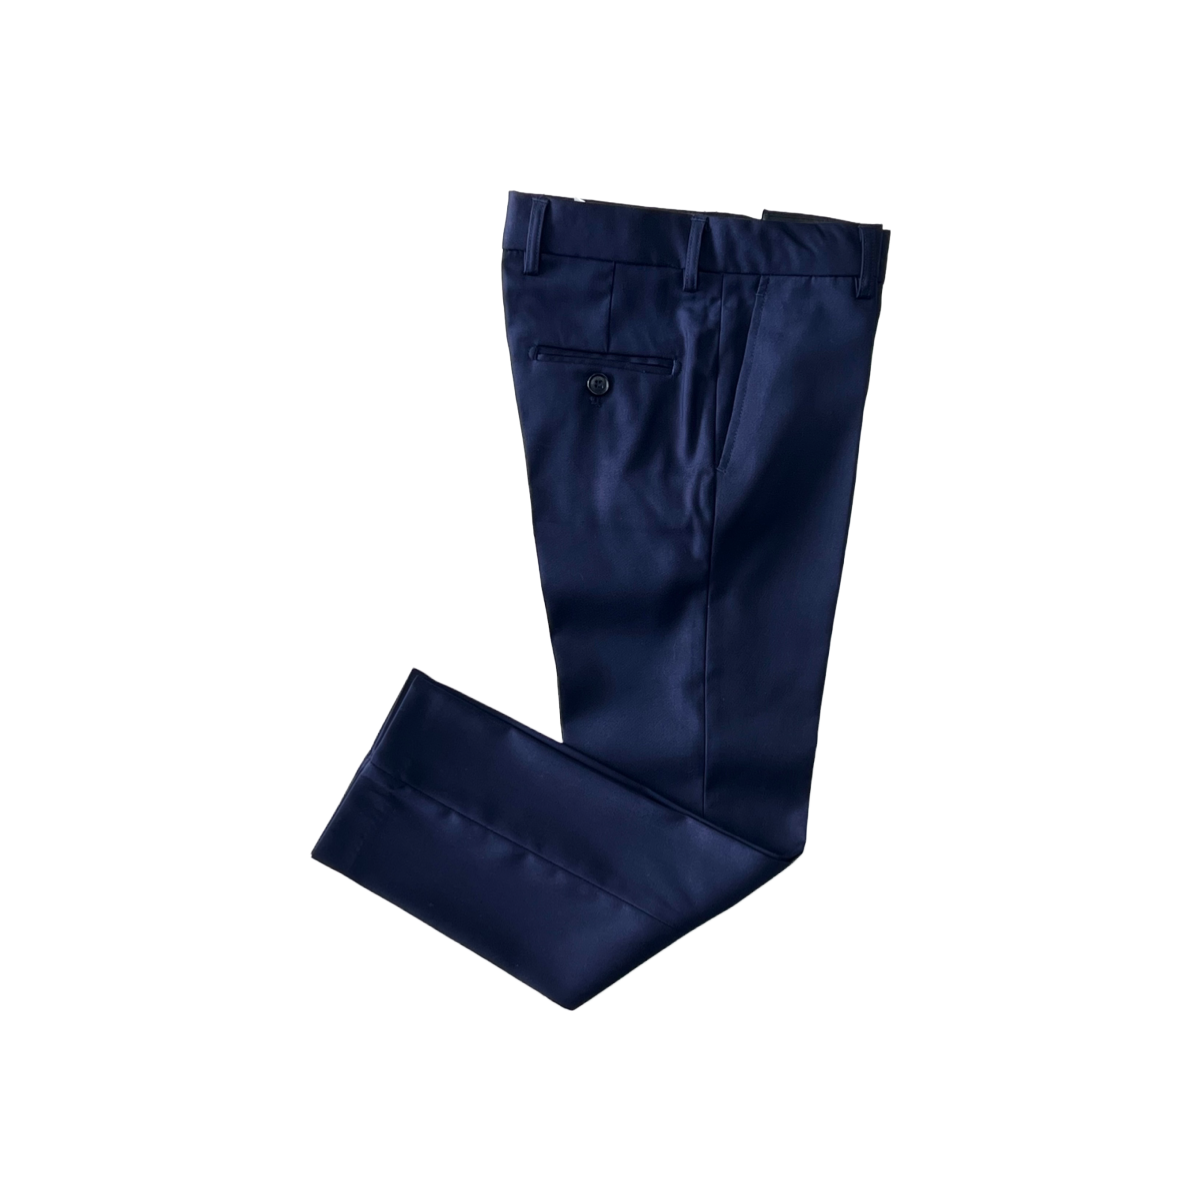 Debonair Slim-Fit Navy Blue Suit